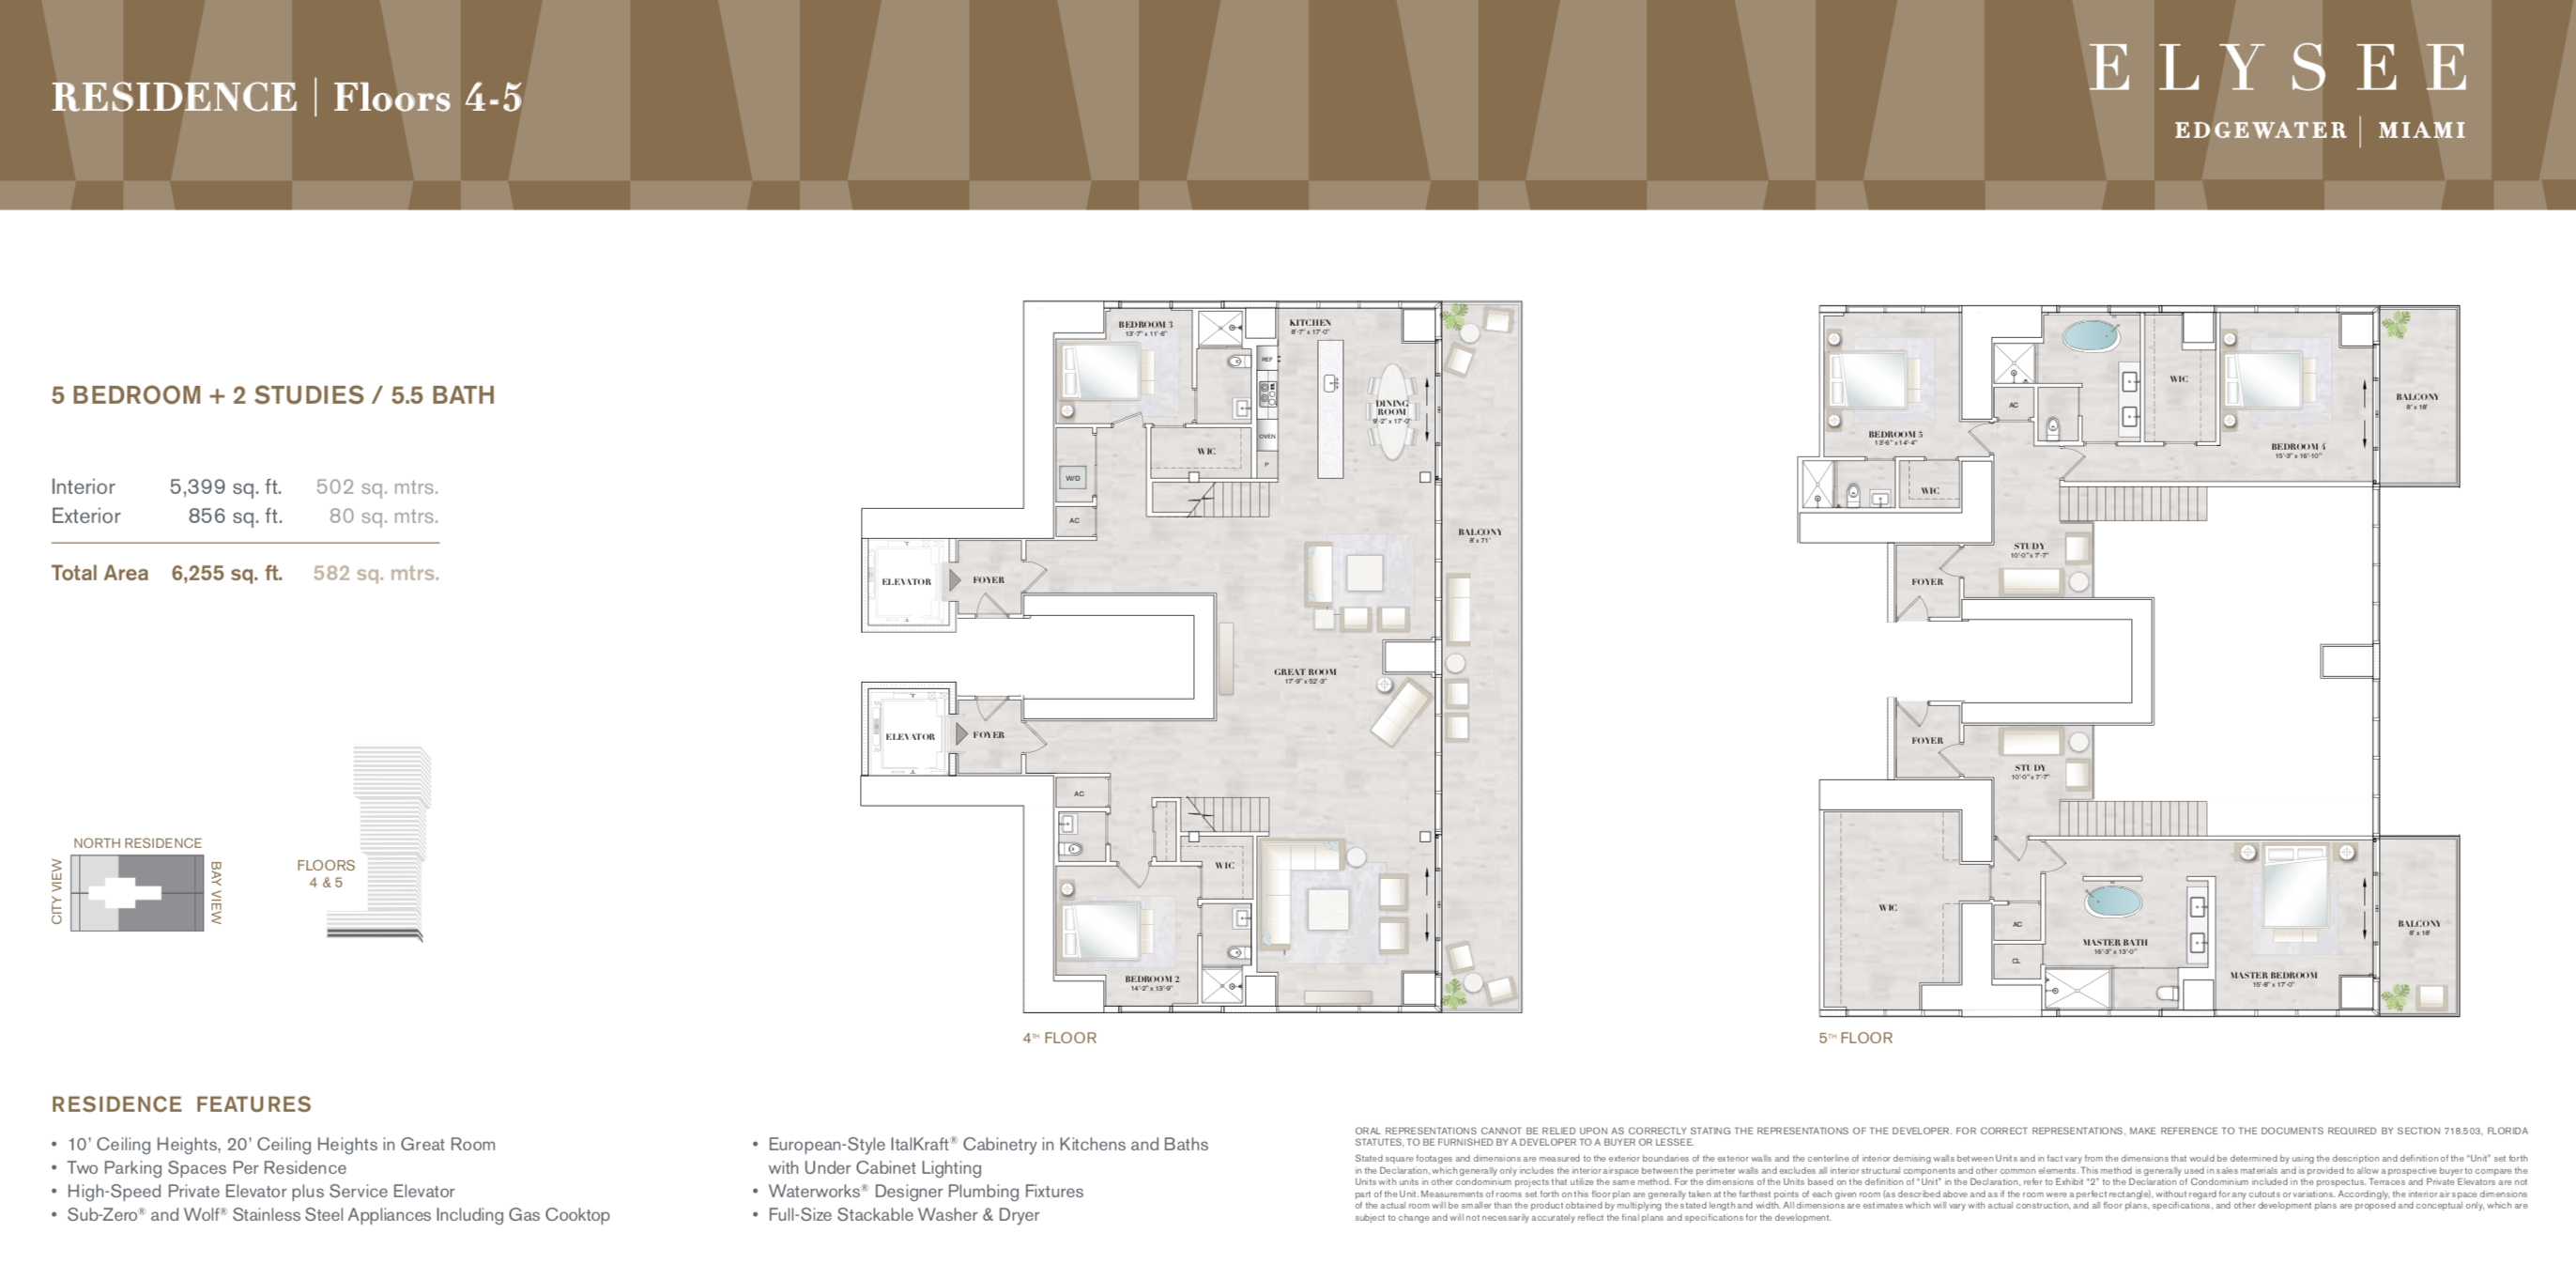 Elysee Duplex Floor 4-5 | 5 Bedrooms | 2 Studies | 5.5 Bathrooms | 5,399 SF